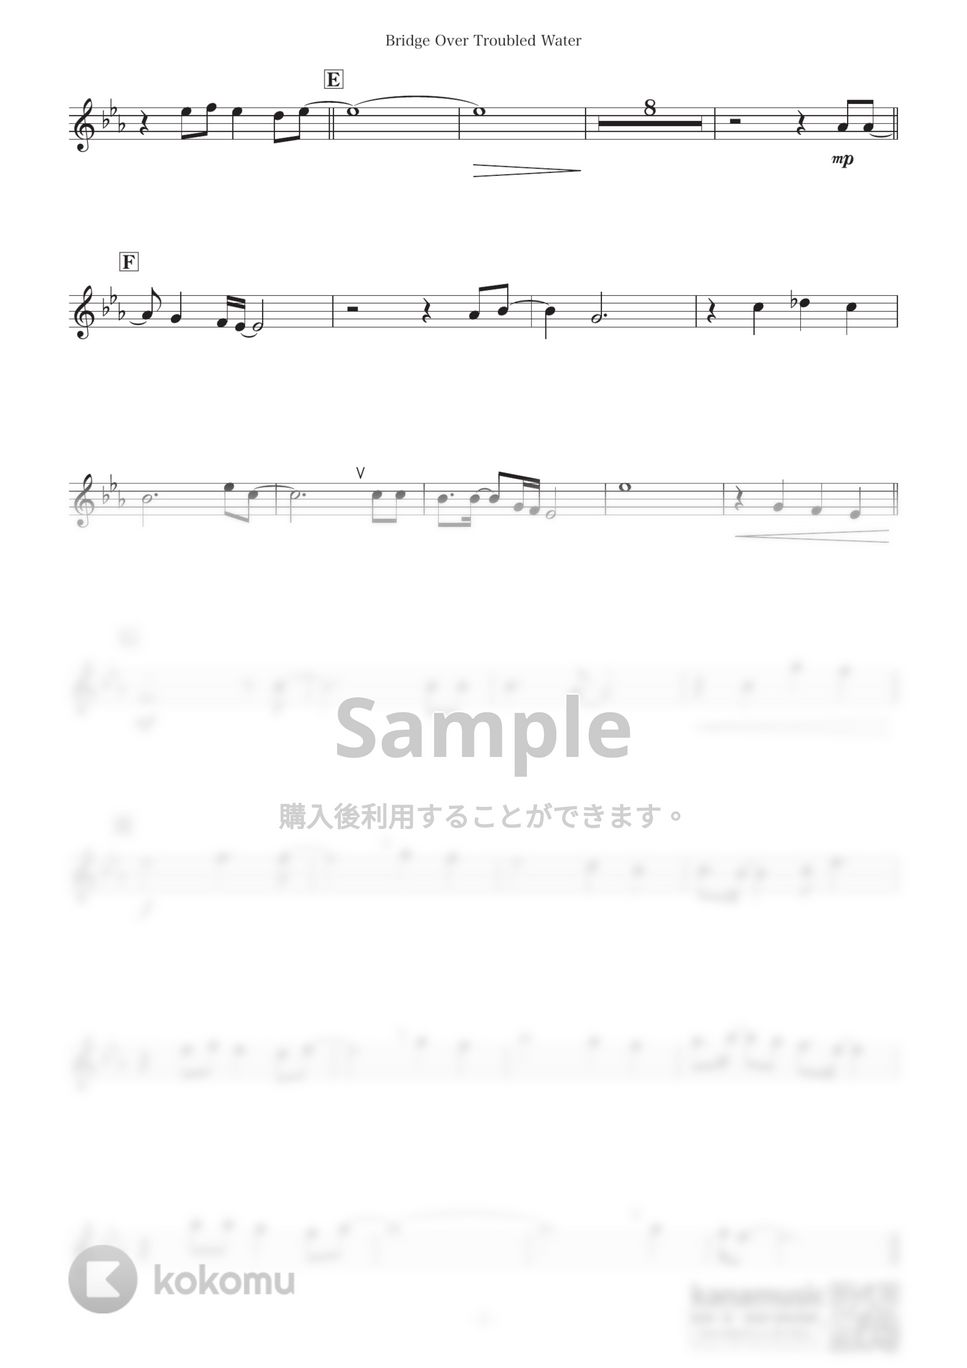 サイモン&ガーファンクル - 明日に架ける橋 (C) by kanamusic